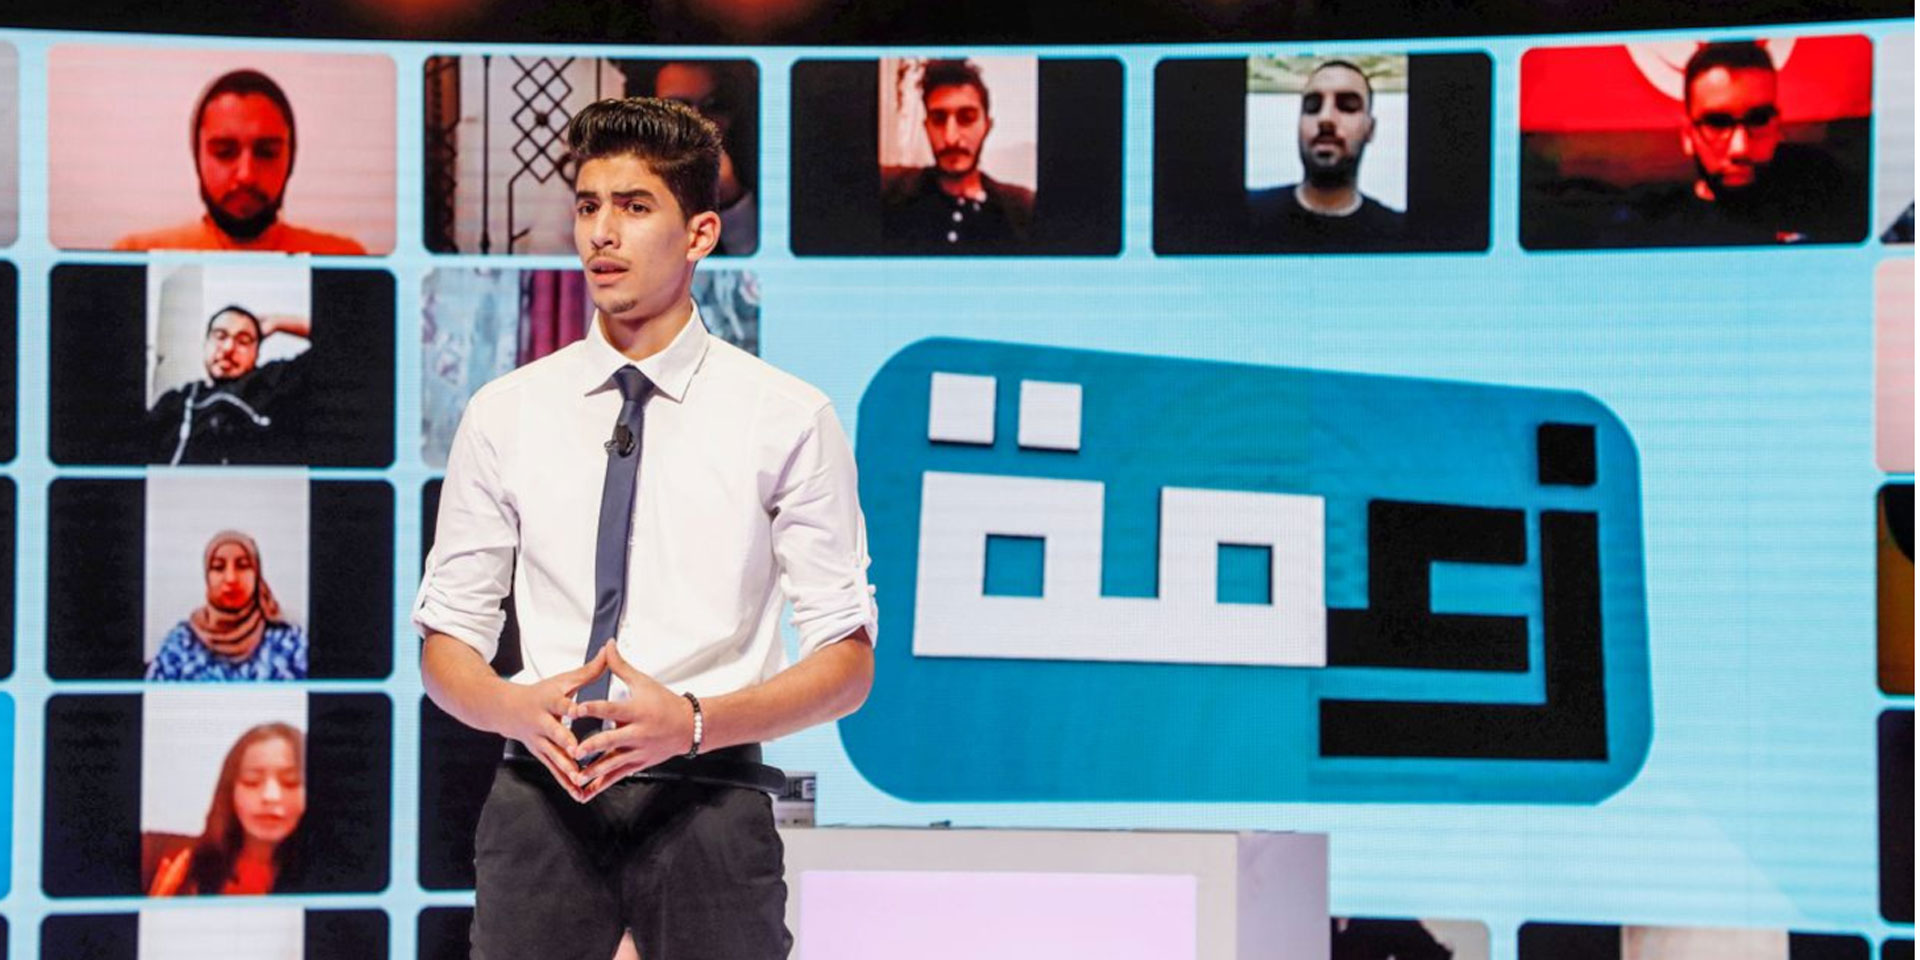 Un joven periodista se coloca delante de una gran pantalla y presenta las noticias